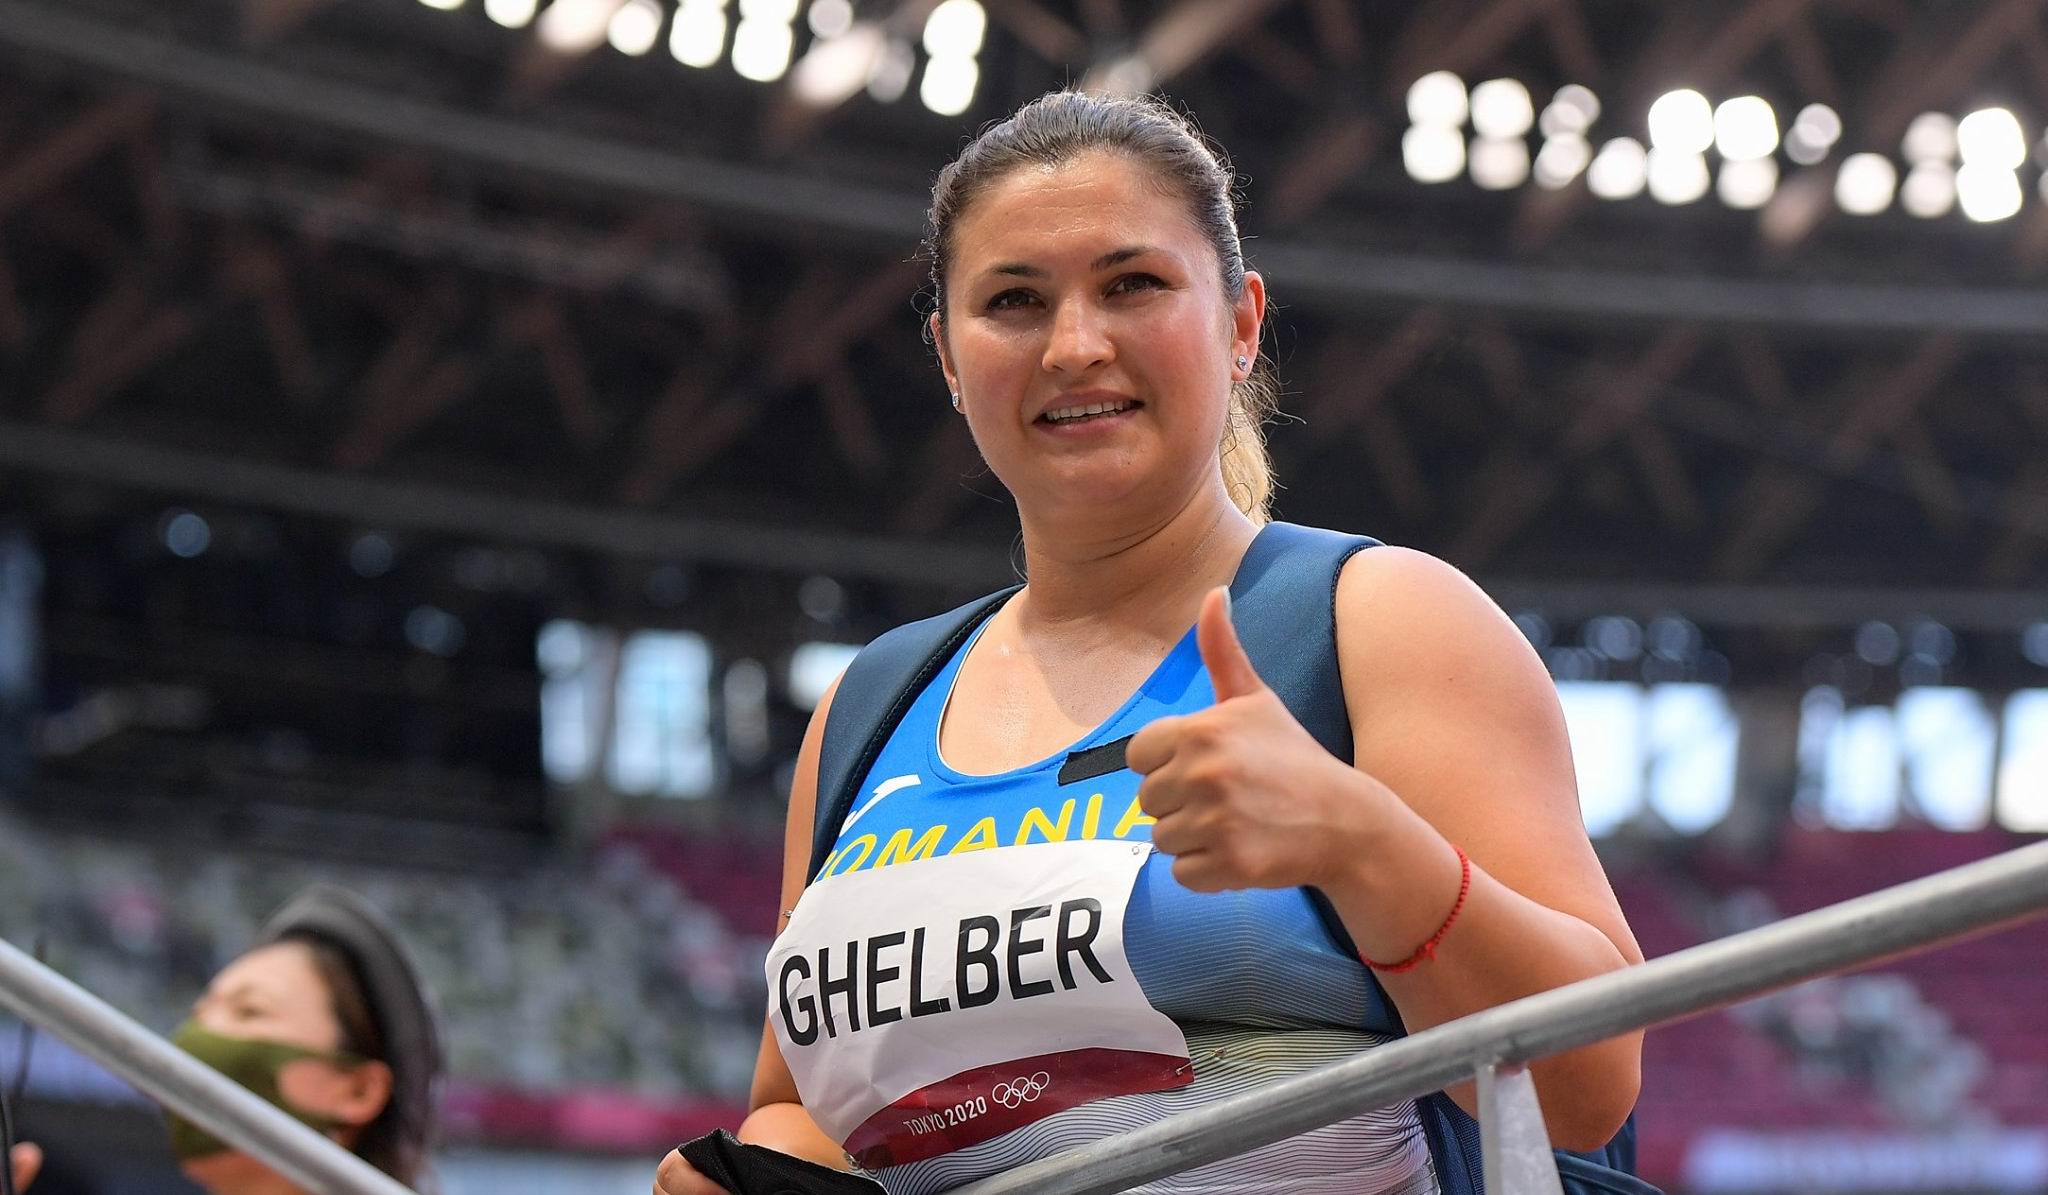 [VIDEO] Atleta romașcană Bianca Ghelber obține în premieră calificarea în finală la Jocurile Olimpice la Tokyo!